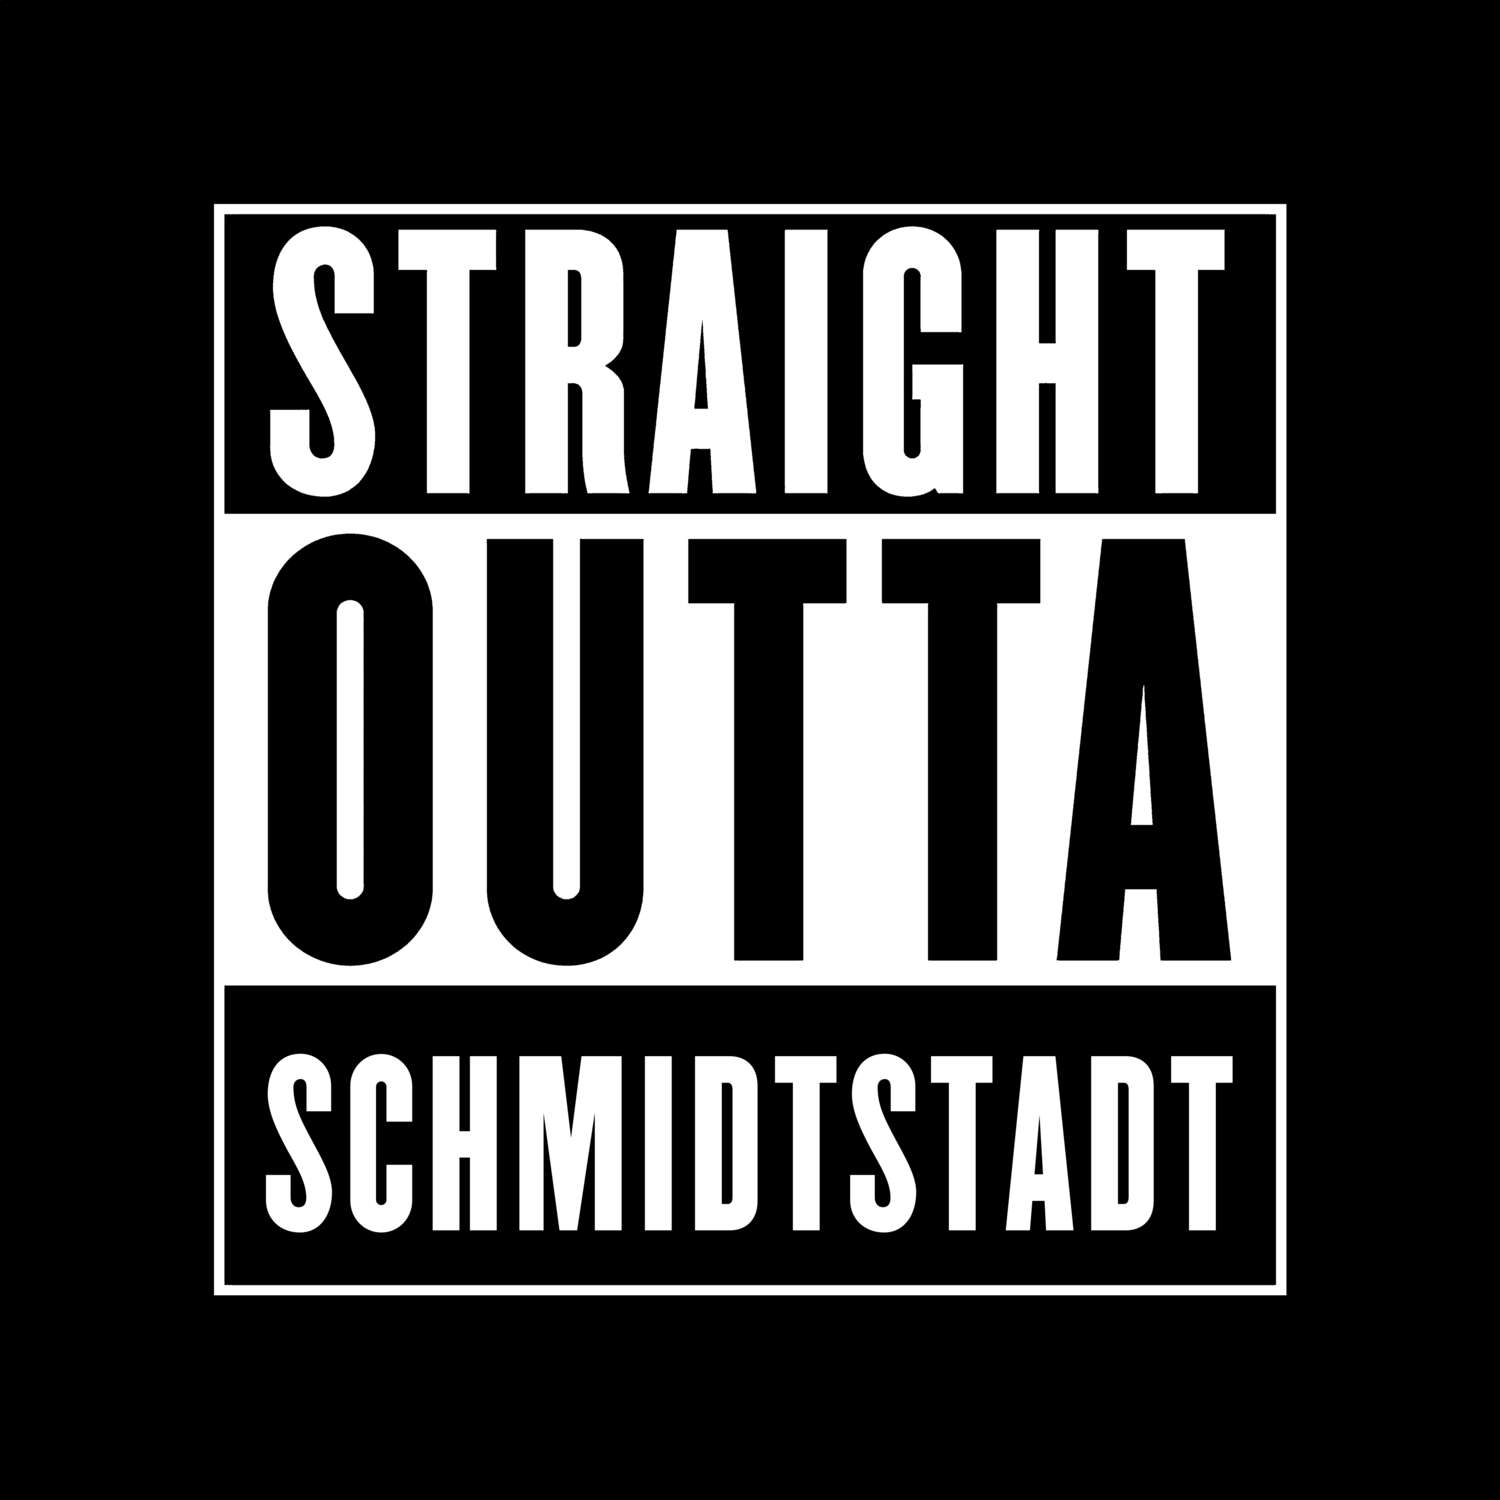 Schmidtstadt T-Shirt »Straight Outta«